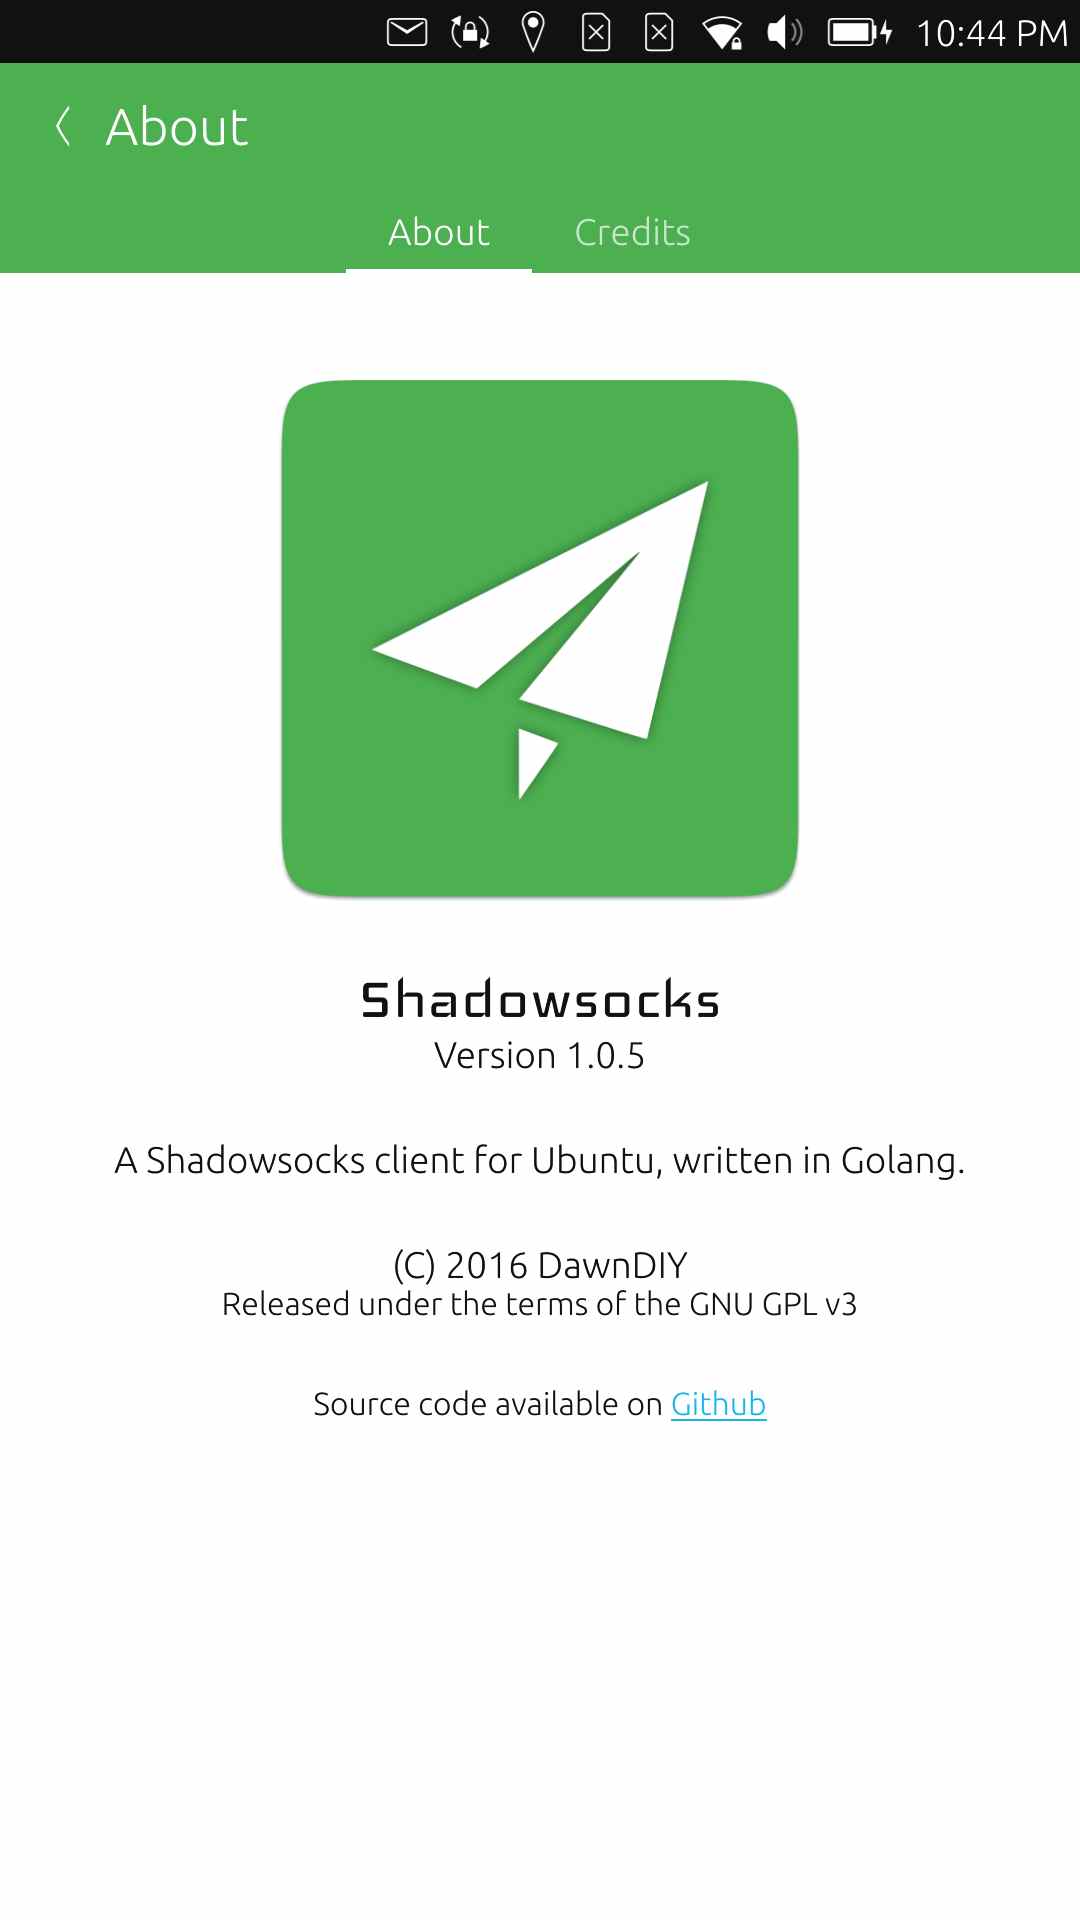 shadowsocks client for ubuntu